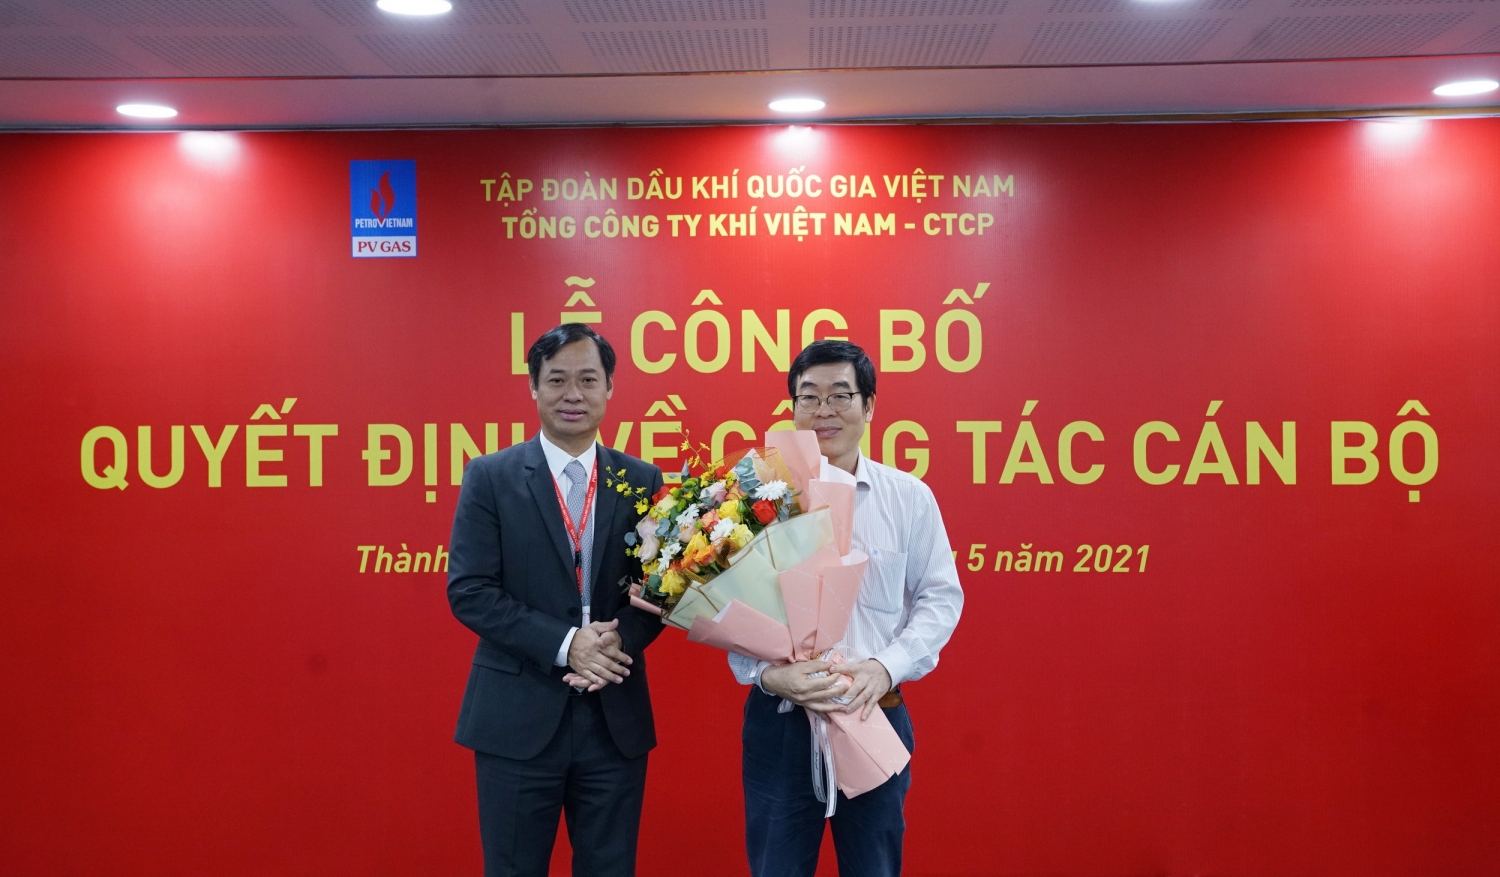 Chủ tịch Công đoàn PV GAS Trần Xuân Thành (trái) tiếp nhận nhiệm vụ từ lãnh đạo tiền nhiệm Nguyễn Văn Hùng